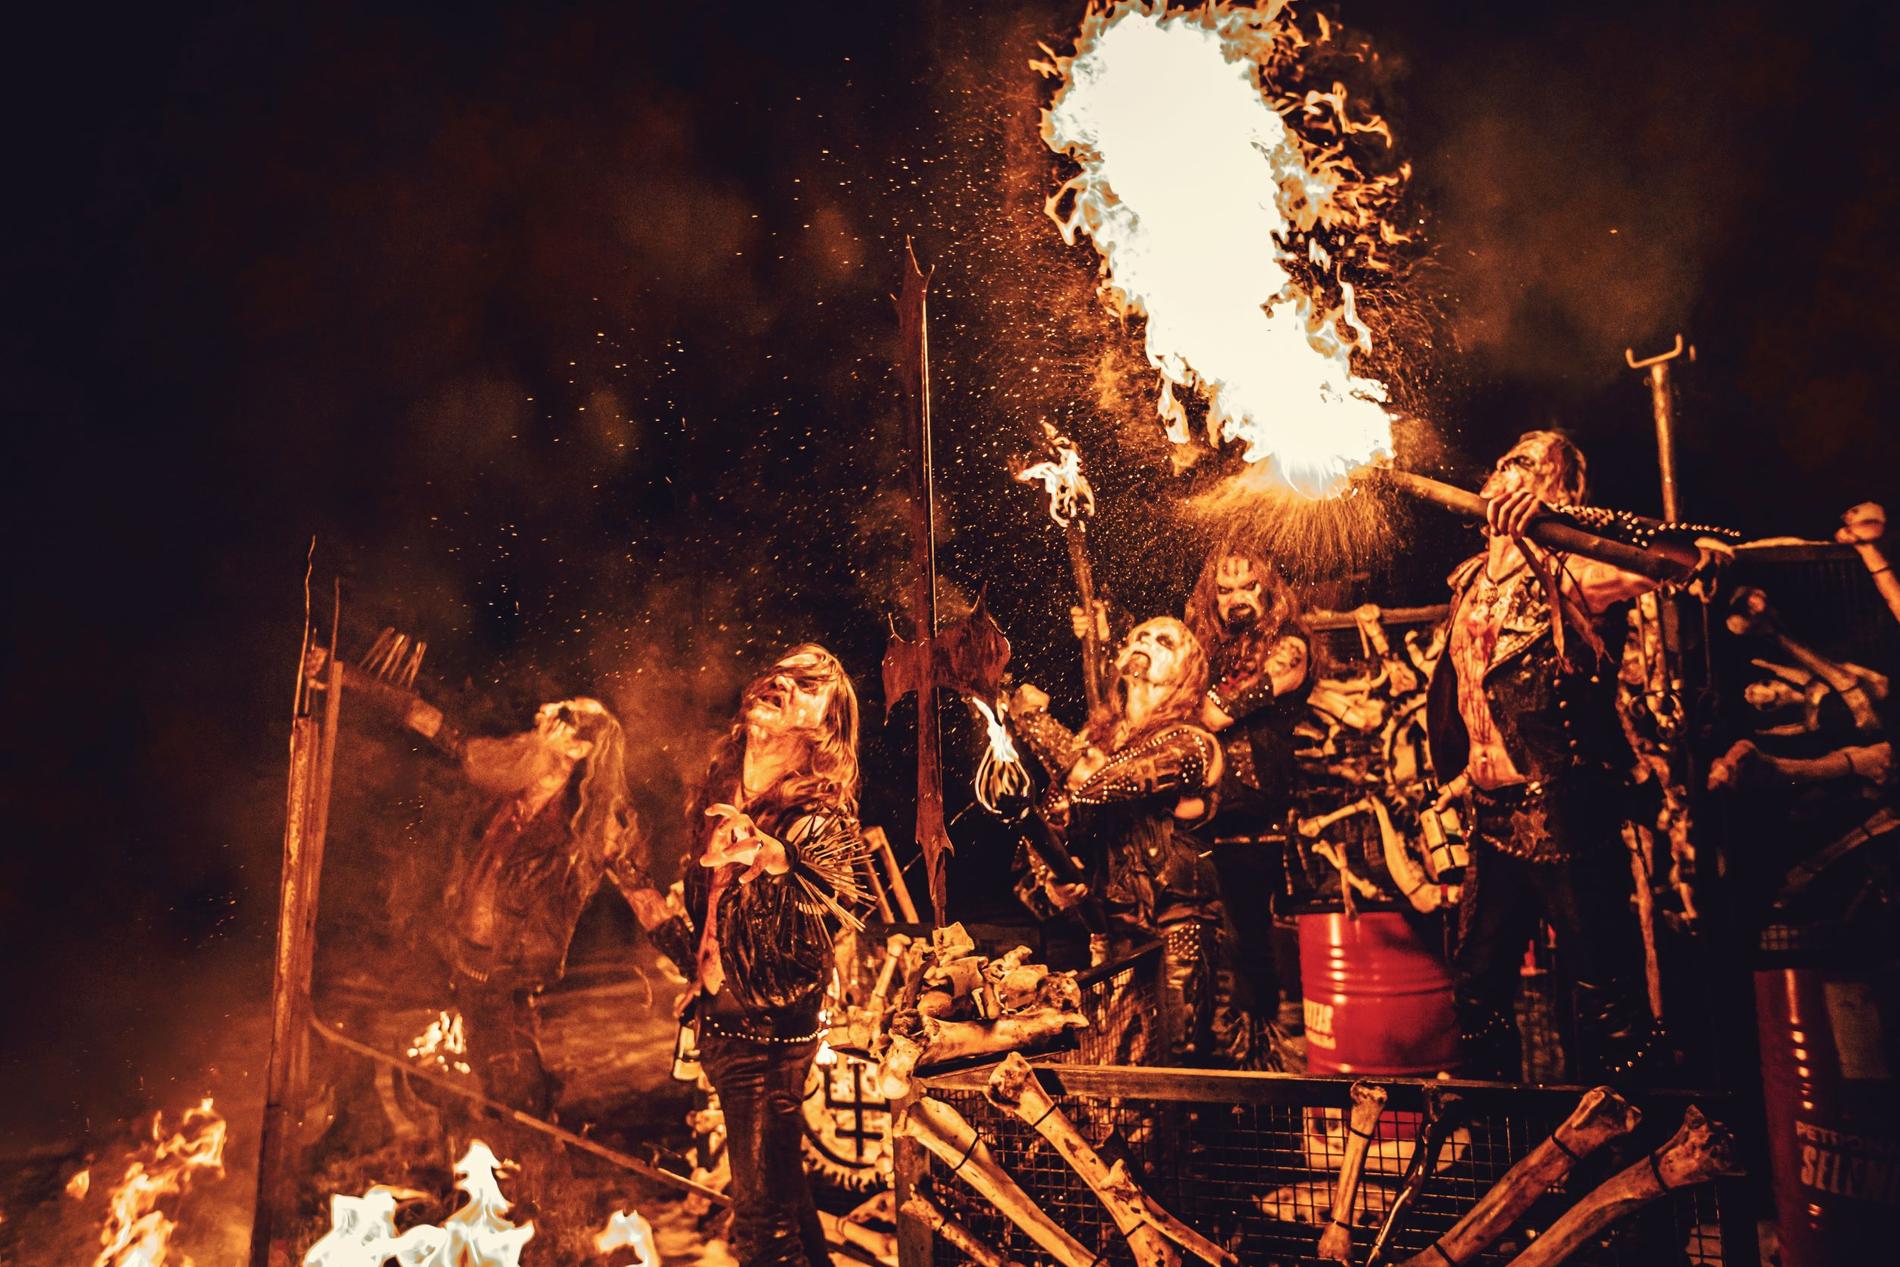 Jämte 2013 års ”The wild hunt” är det nya sjunde albumet Watains mest tillgängliga alster.